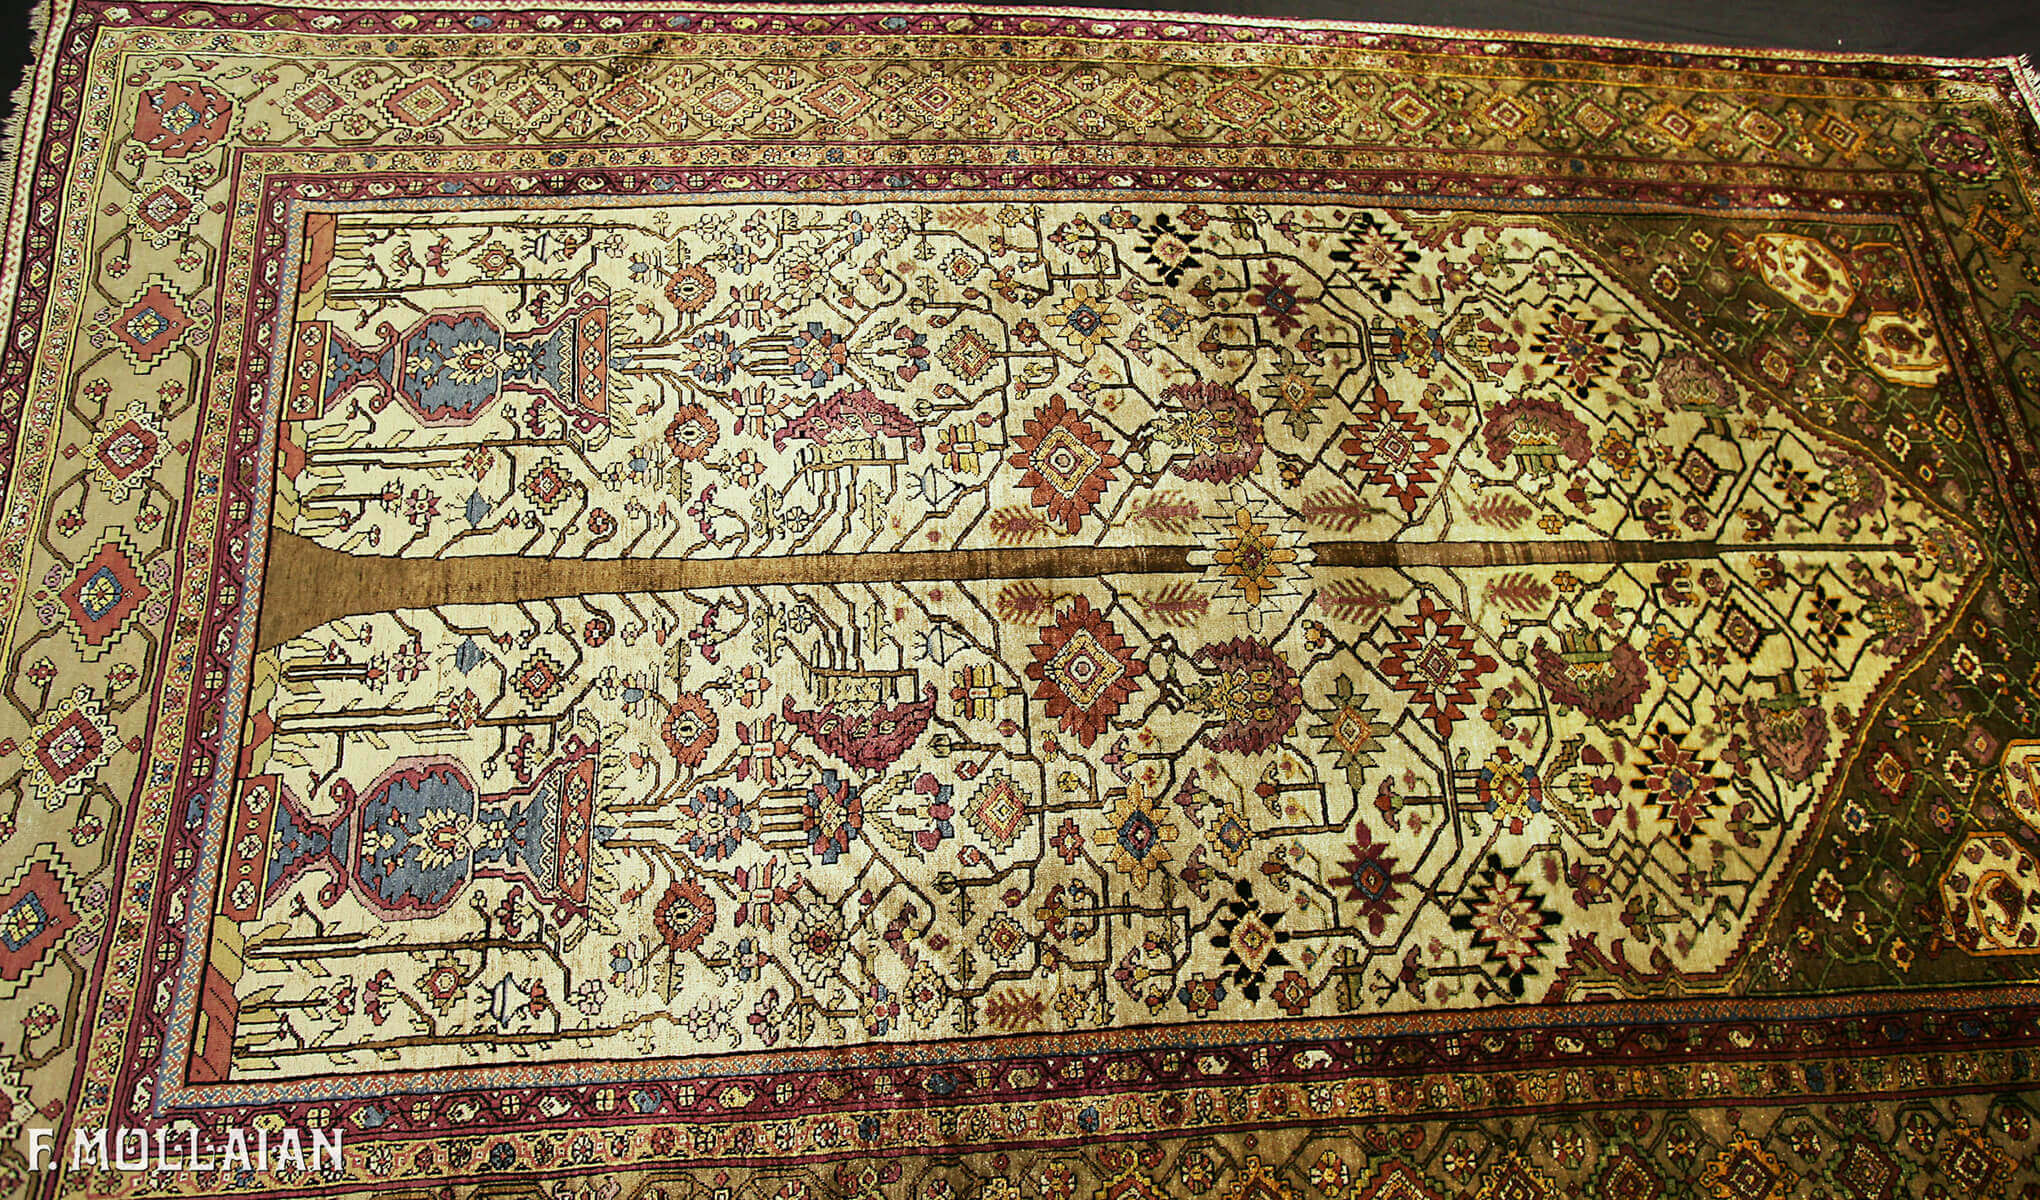 Antique Silk Persian Farahan Rug n°:68957261